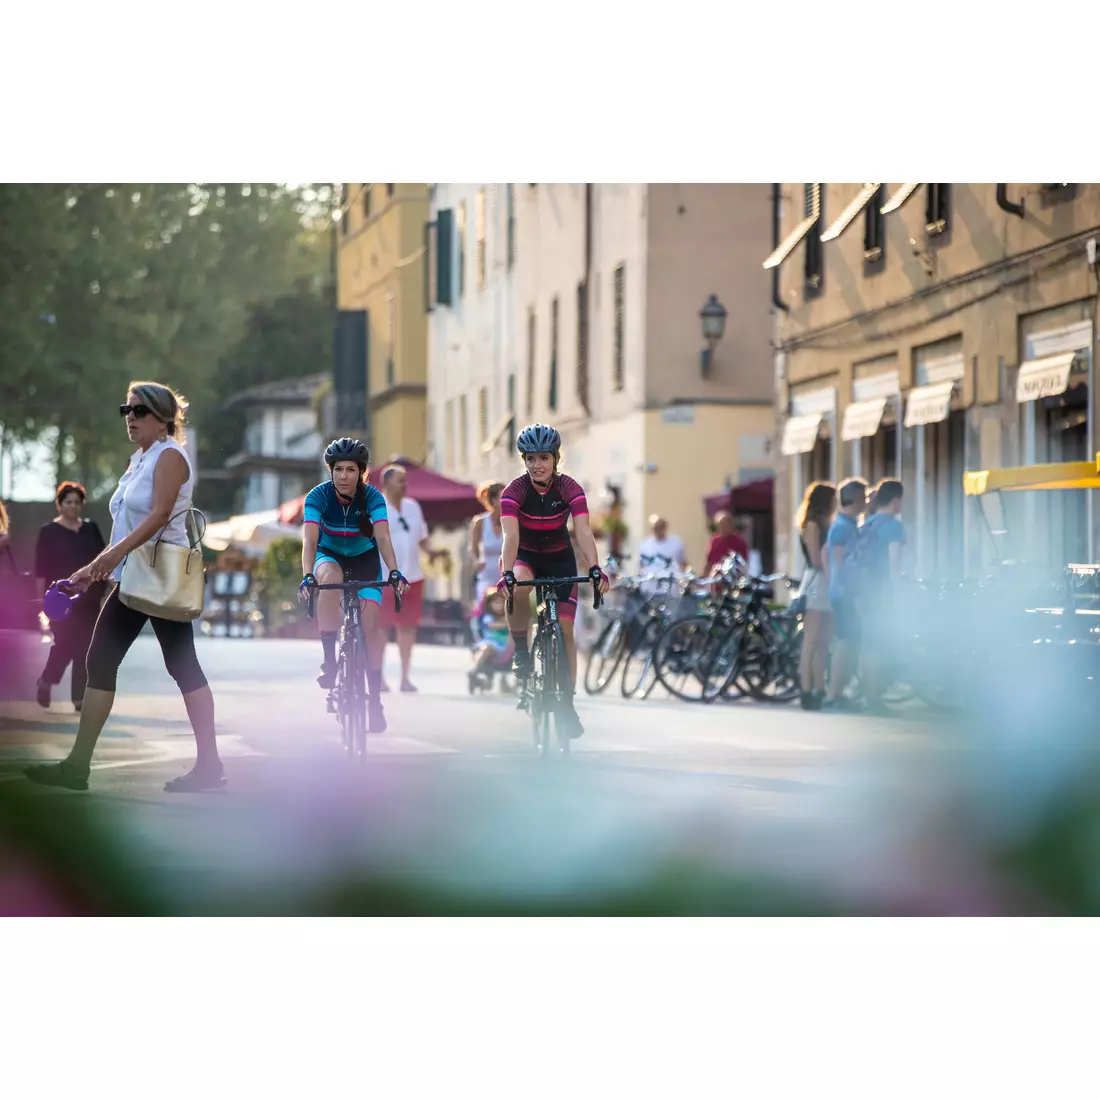 Rogelli Impress 010.160 női kerékpáros mez kék / rózsaszín